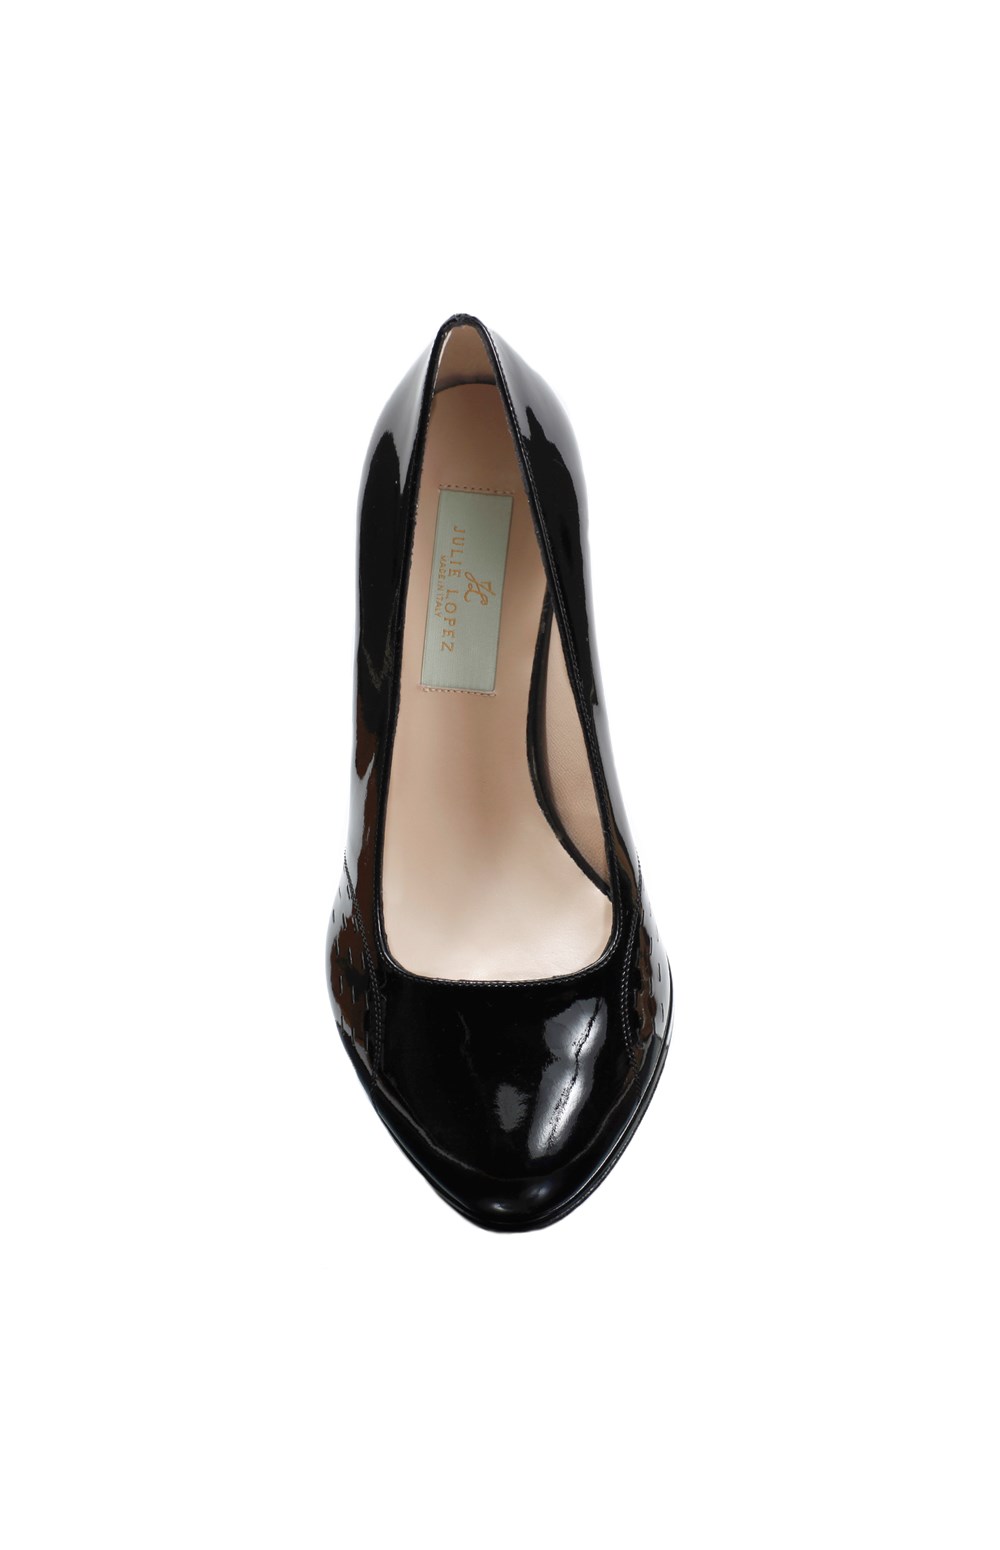 Emma - comfortable heels - heels for bunions | Julie Lopez Shoes